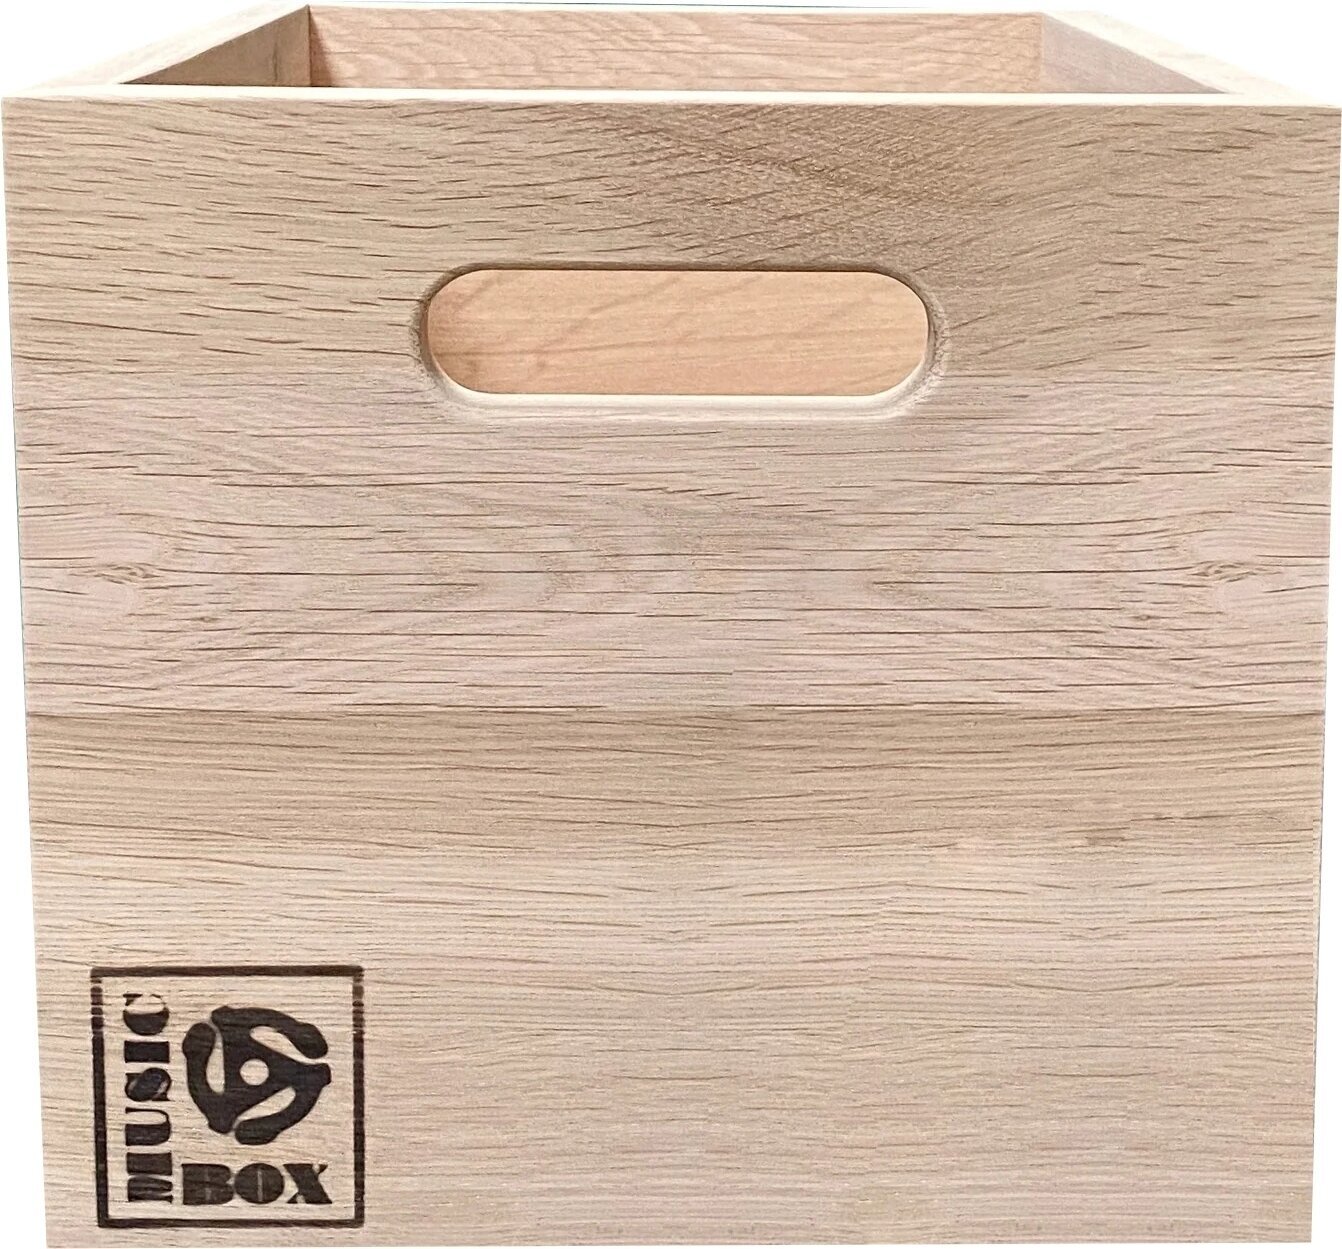 Box für LP-Platten Music Box Designs 7 inch Vinyl Storage Box- ‘Singles Going Steady' Natural Oak